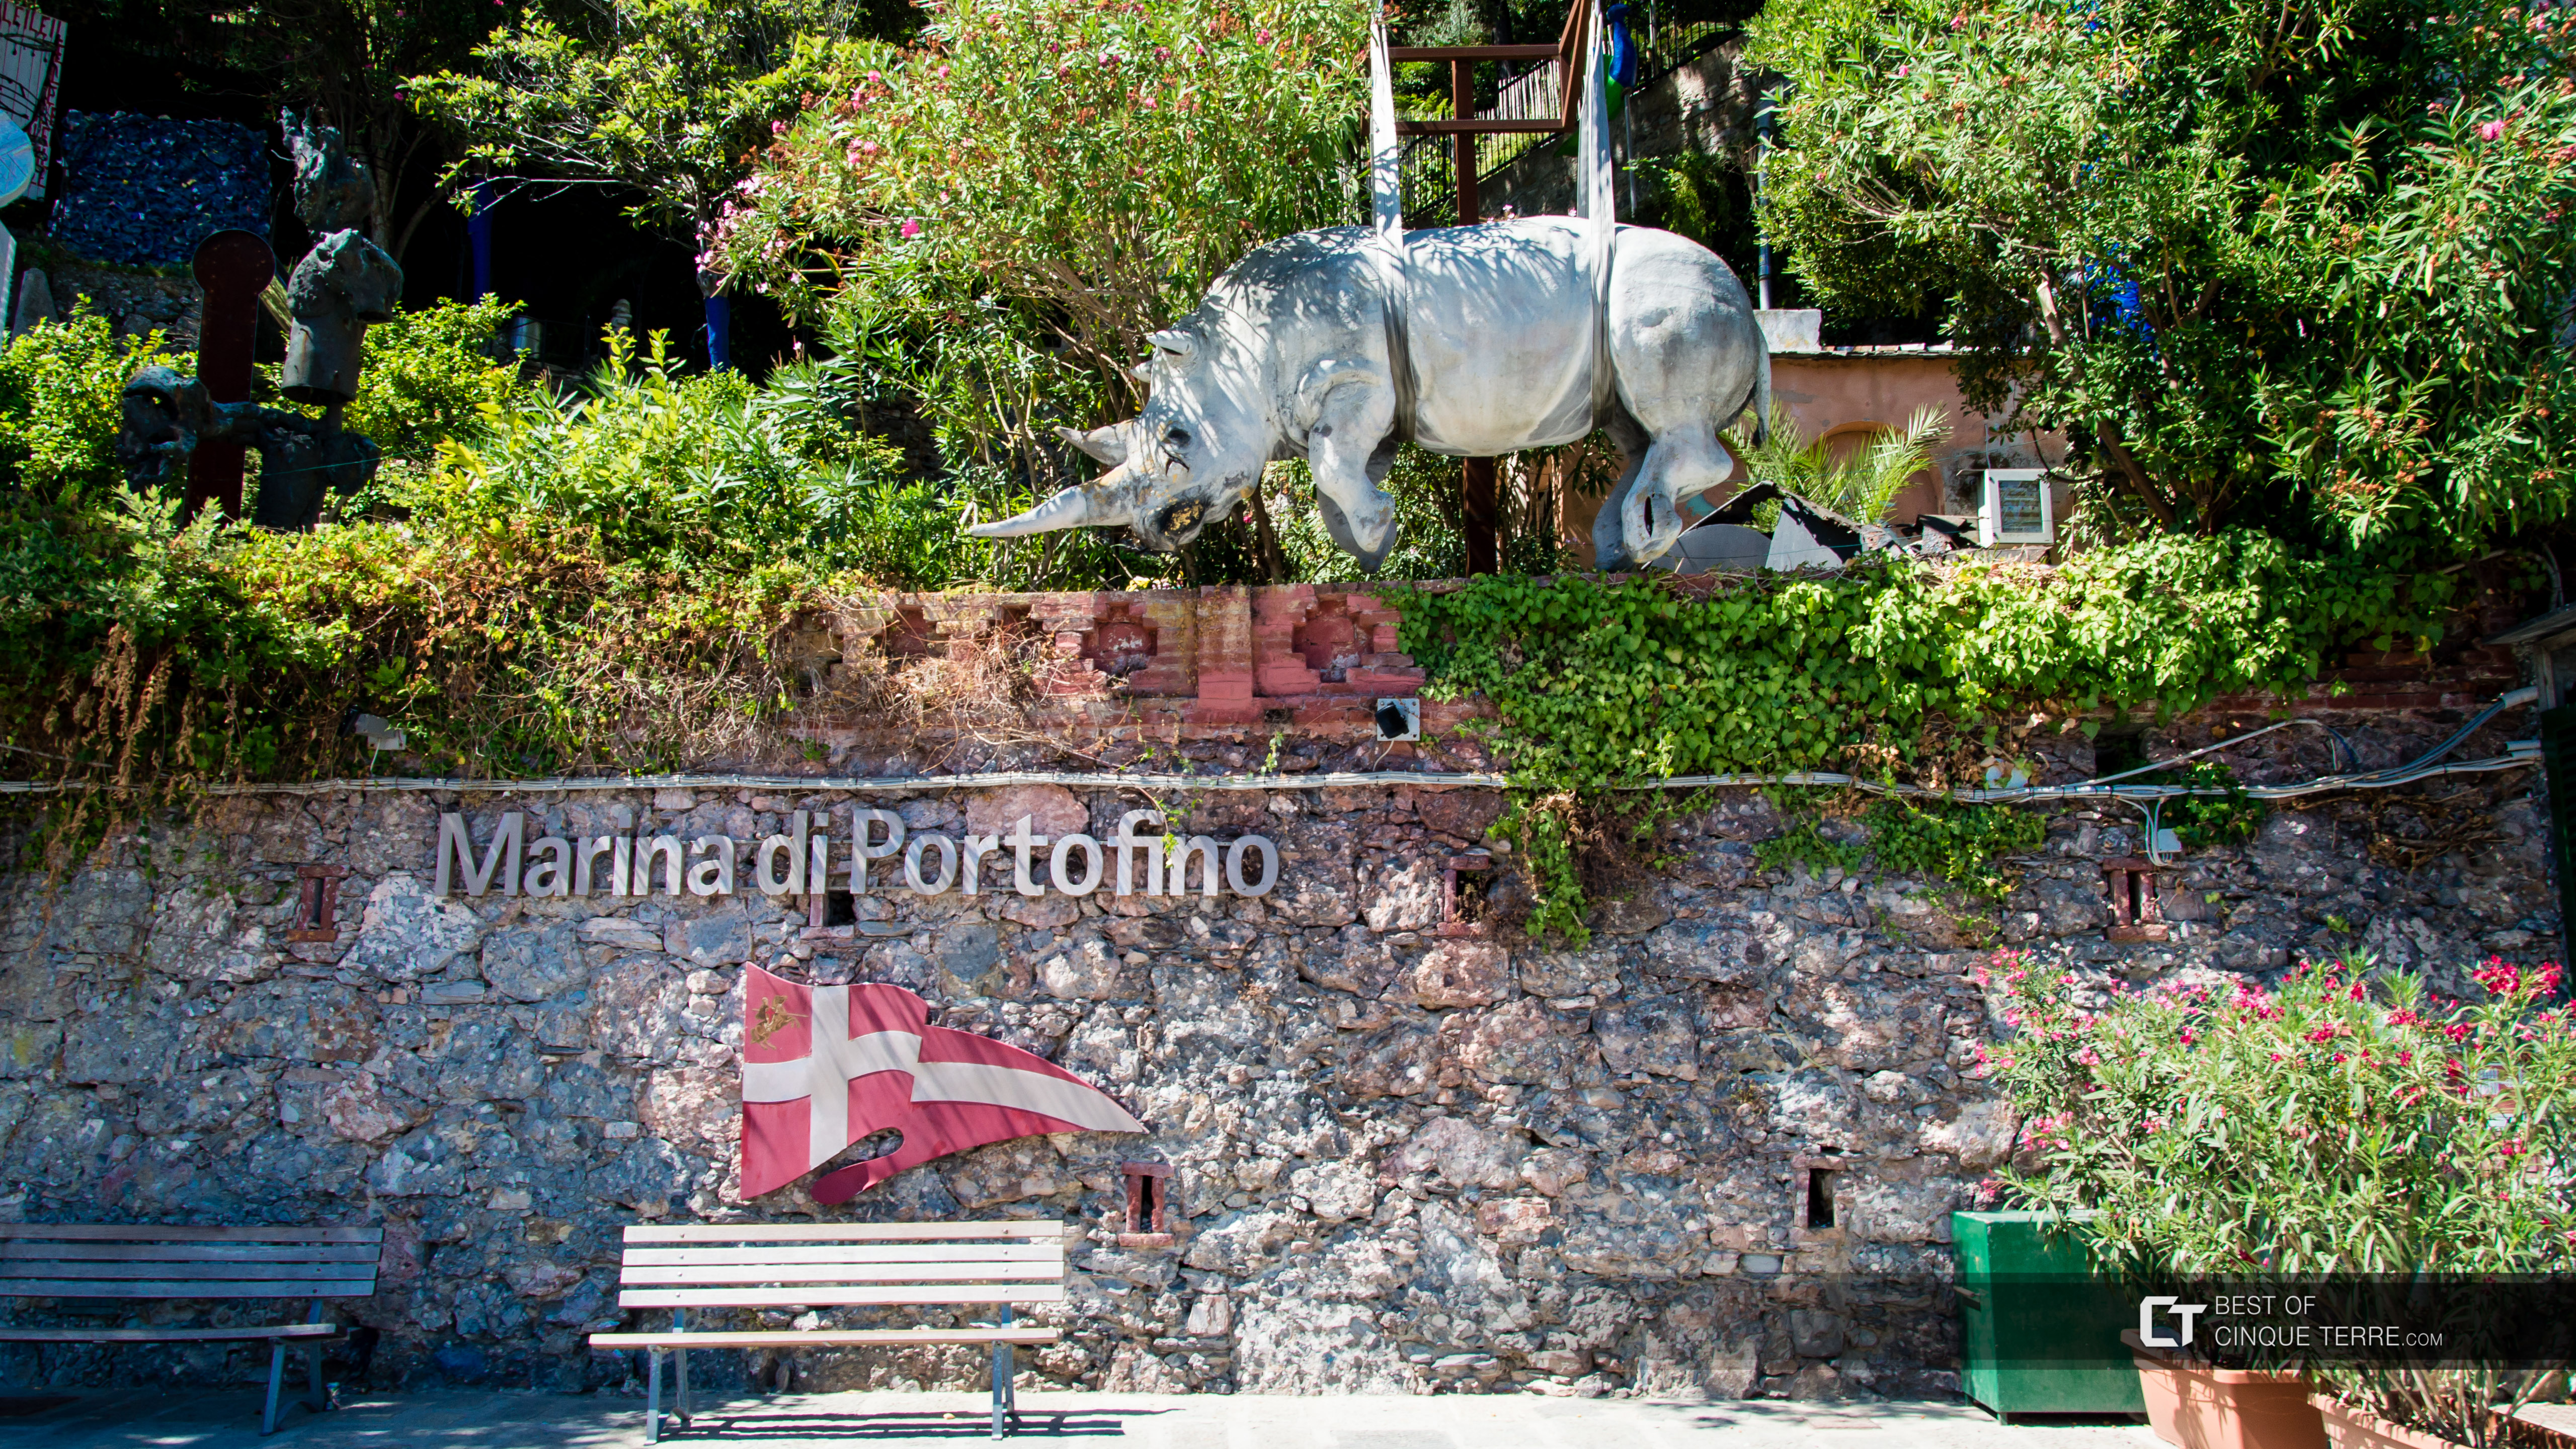 Статуя носорога, символ города, Портофино, Италия